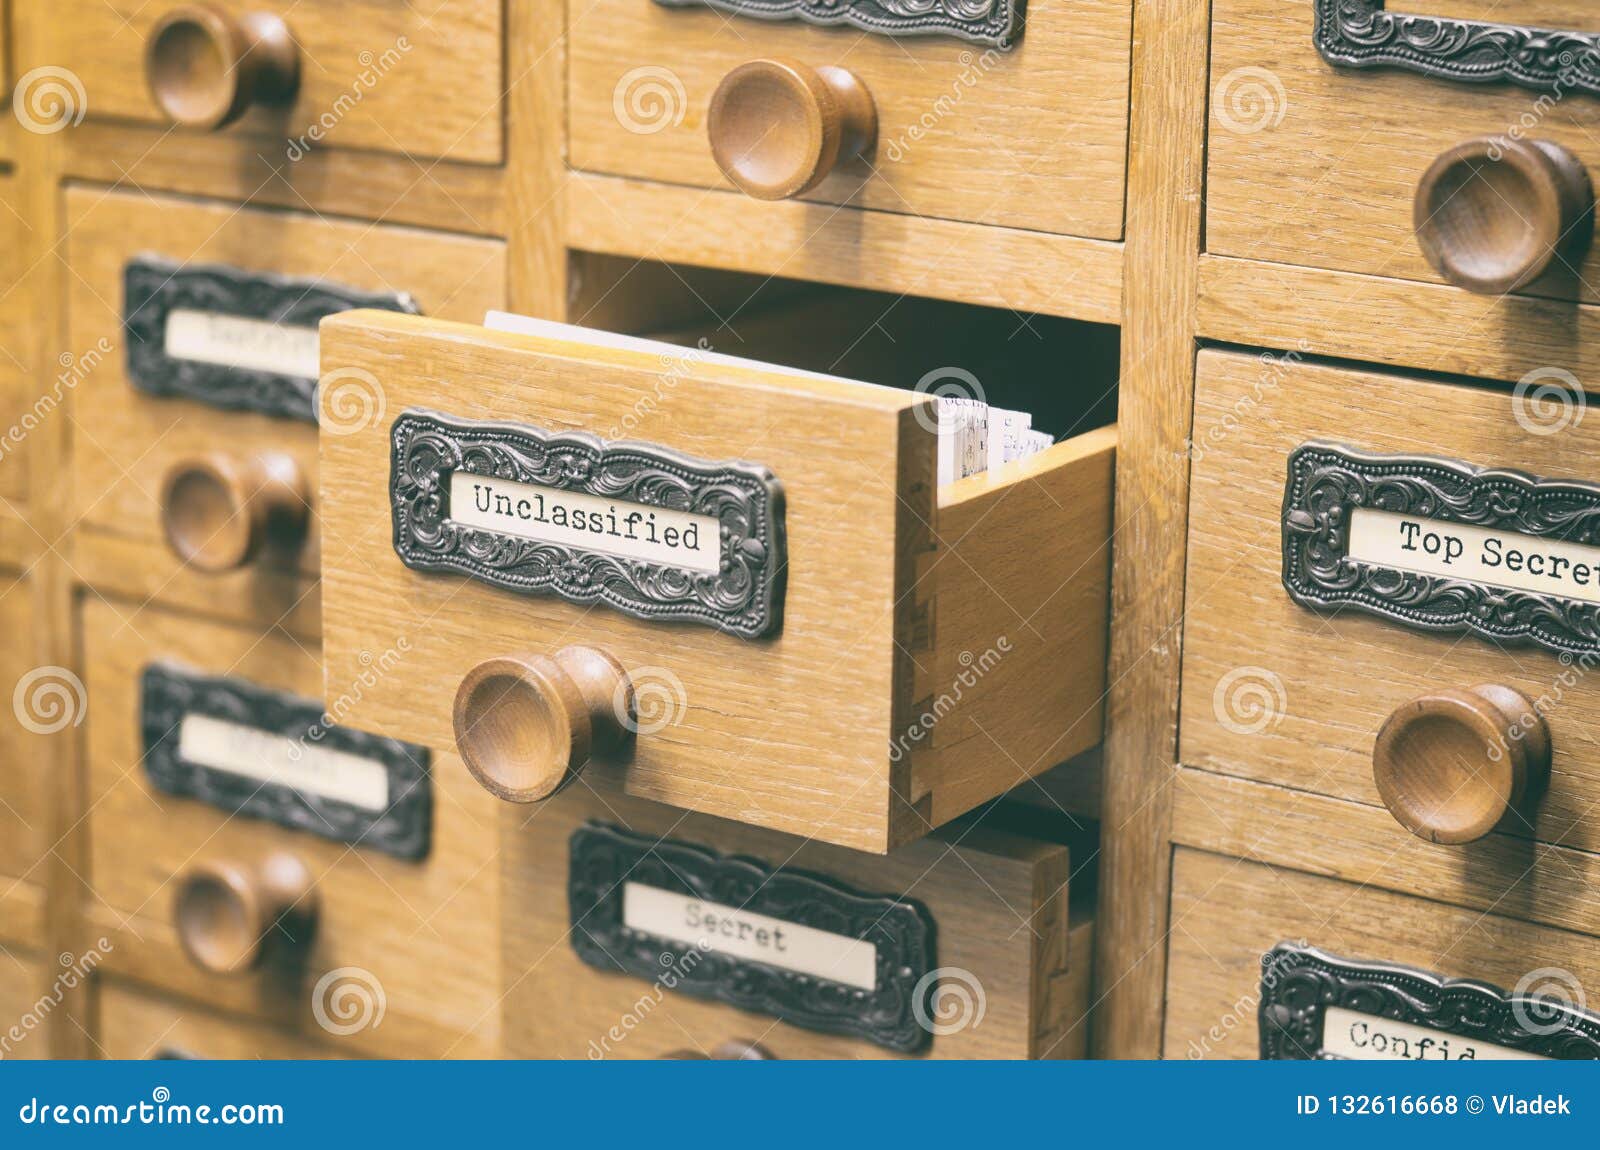 老木档案库文件目录抽屉，Unclasified文件. 档案目录，老木文件编目箱子、索引、数据库、档案和图书馆概念